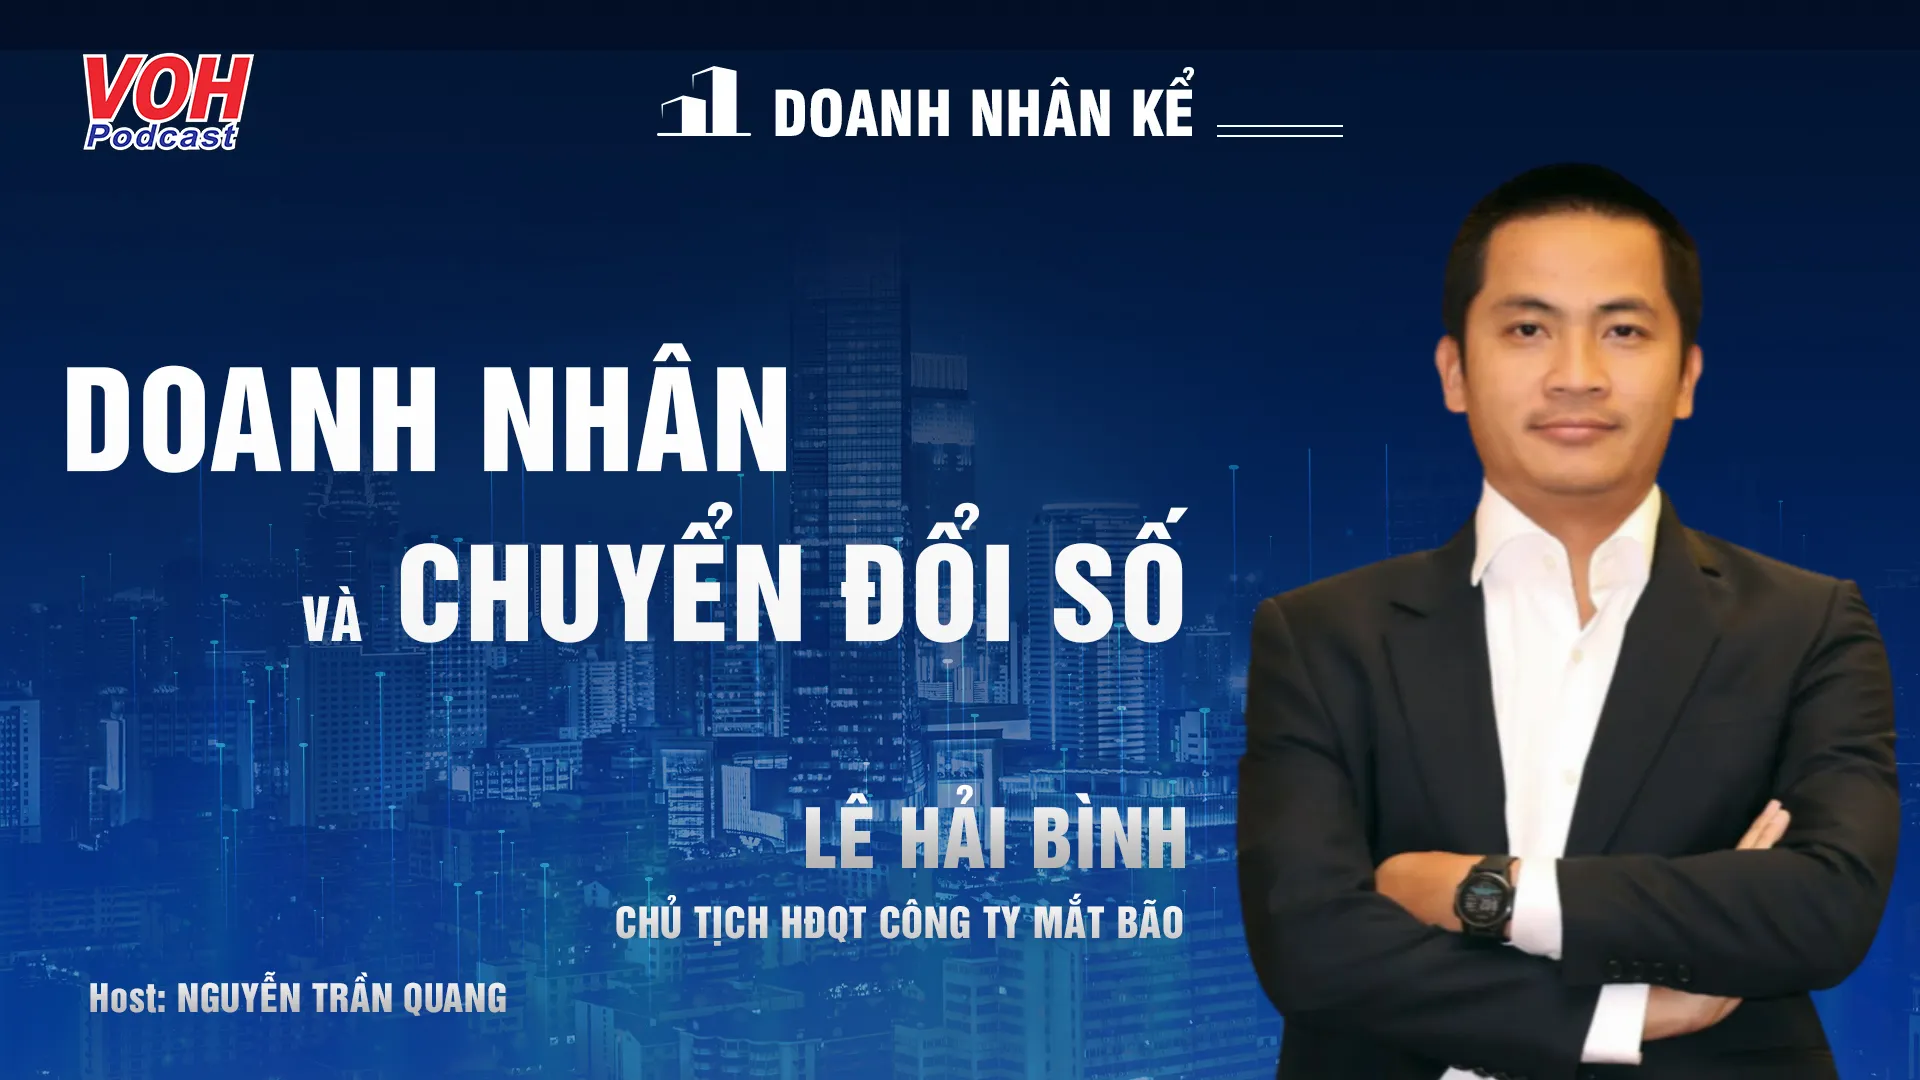 Doanh nhân Lê Hải Bình: Chuyển đổi số doanh nghiệp | DNK #7